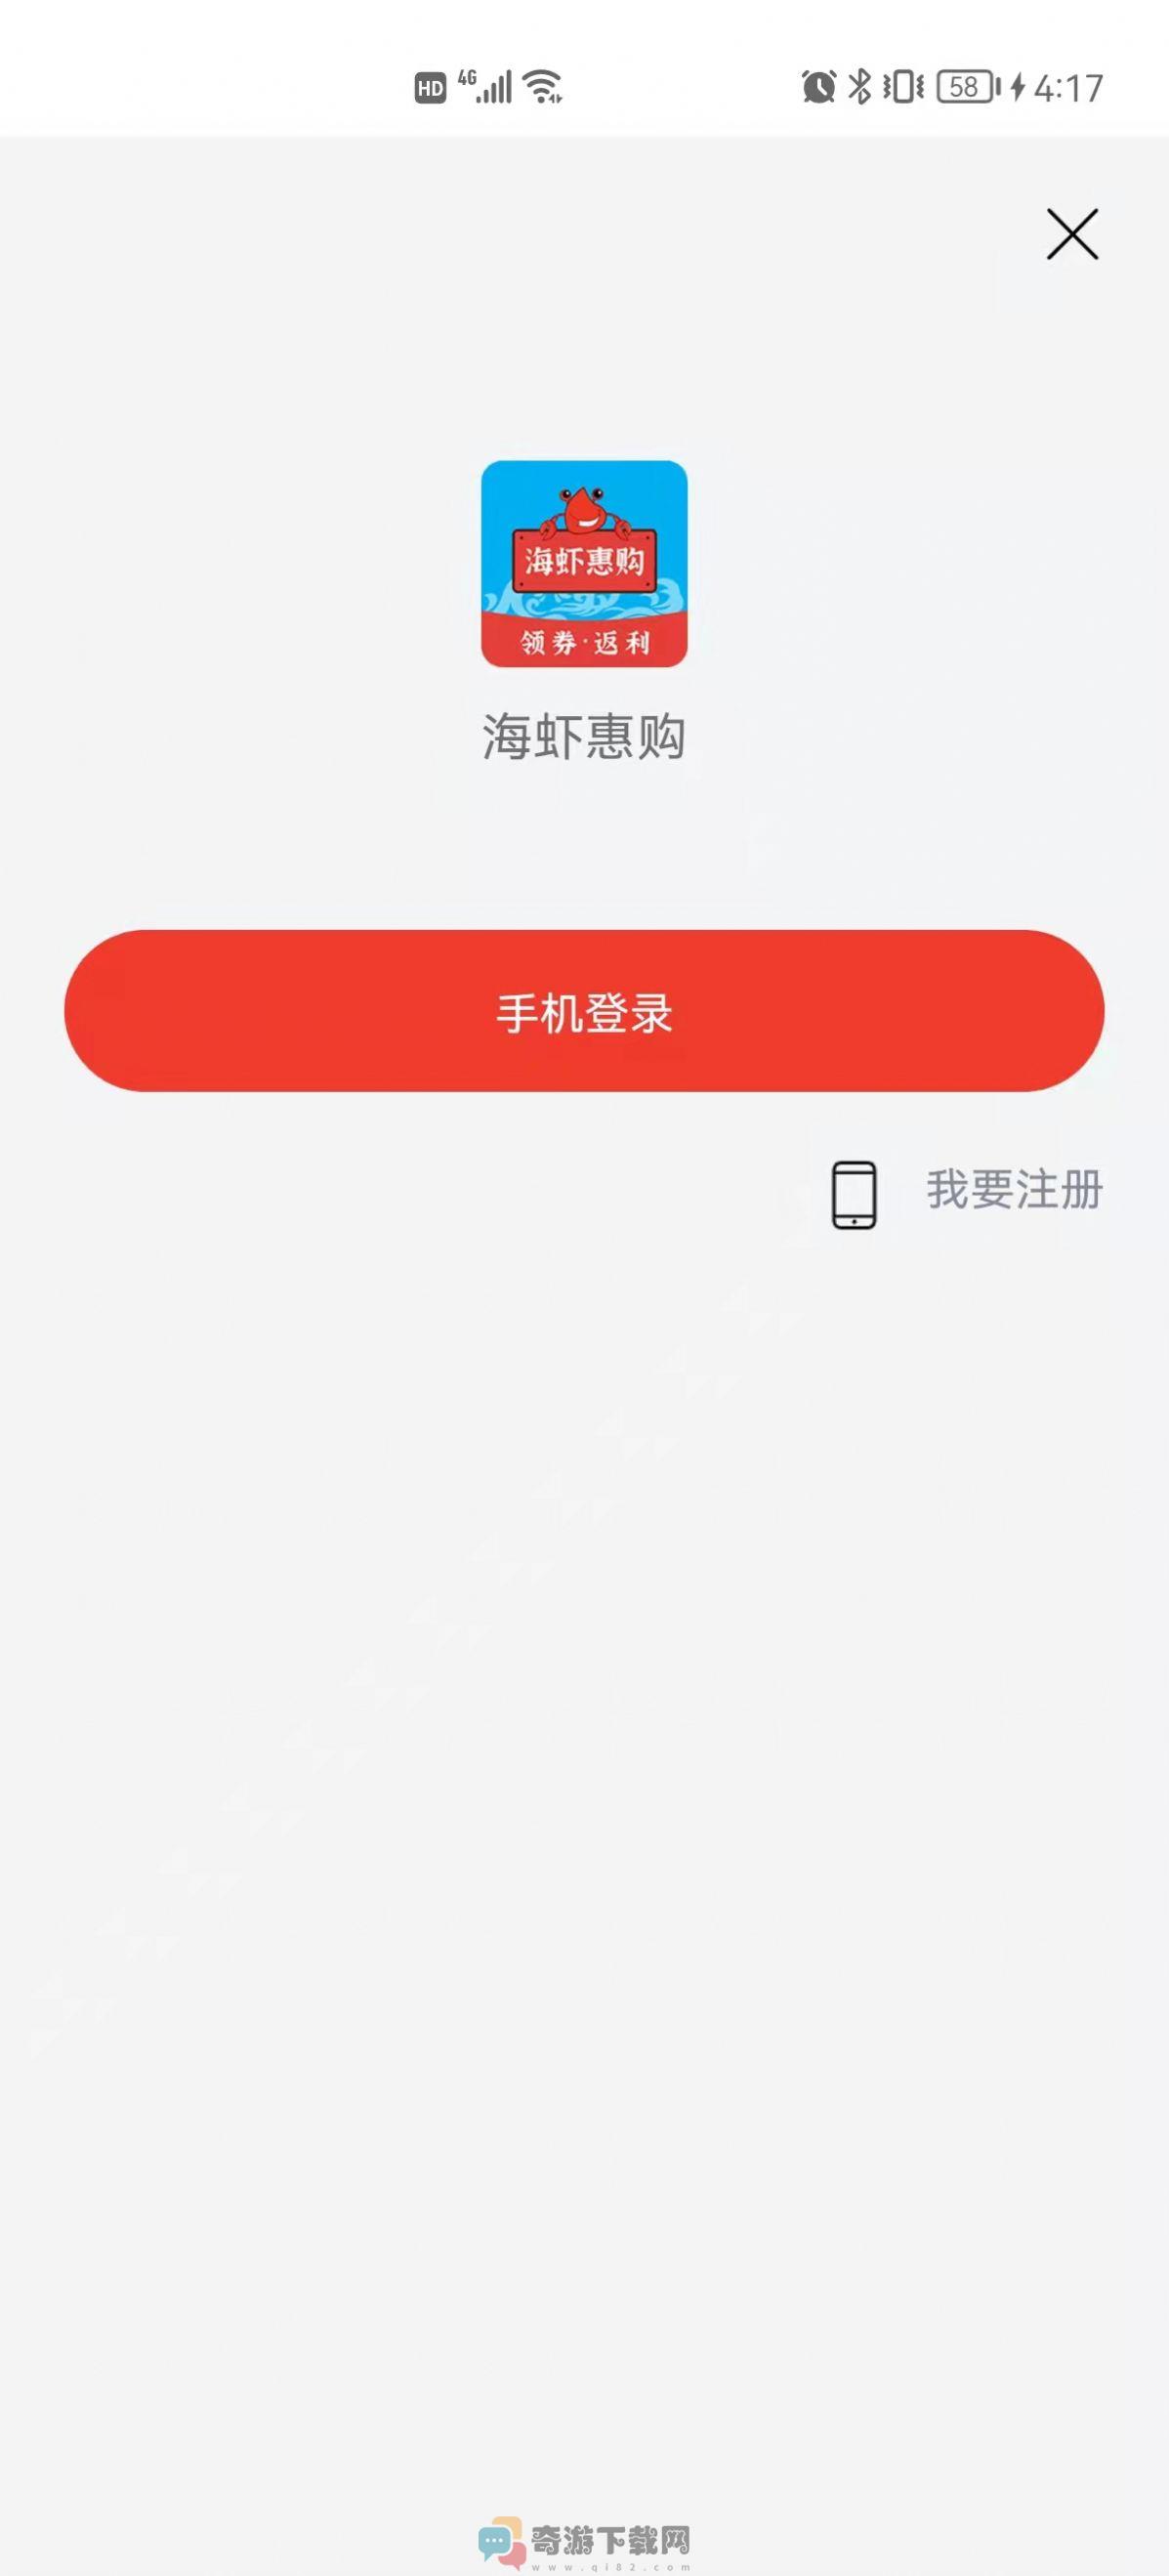 海虾惠购商城官方app图片2